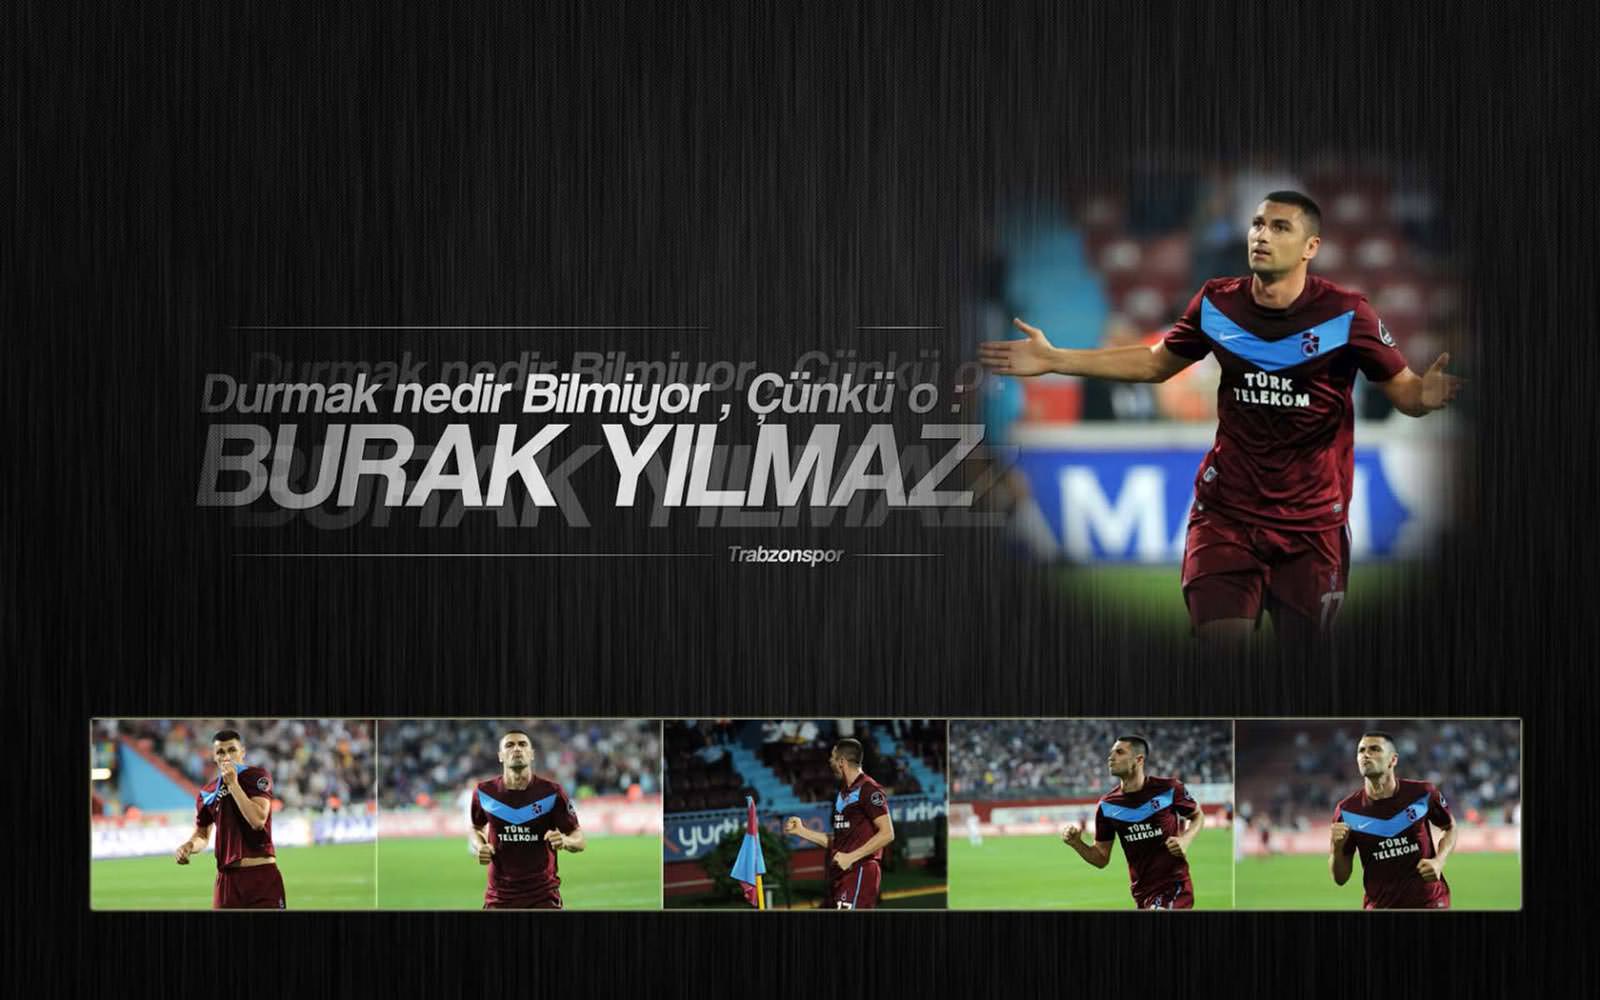 Burak Yilmaz Trabzonspor Wallpaper